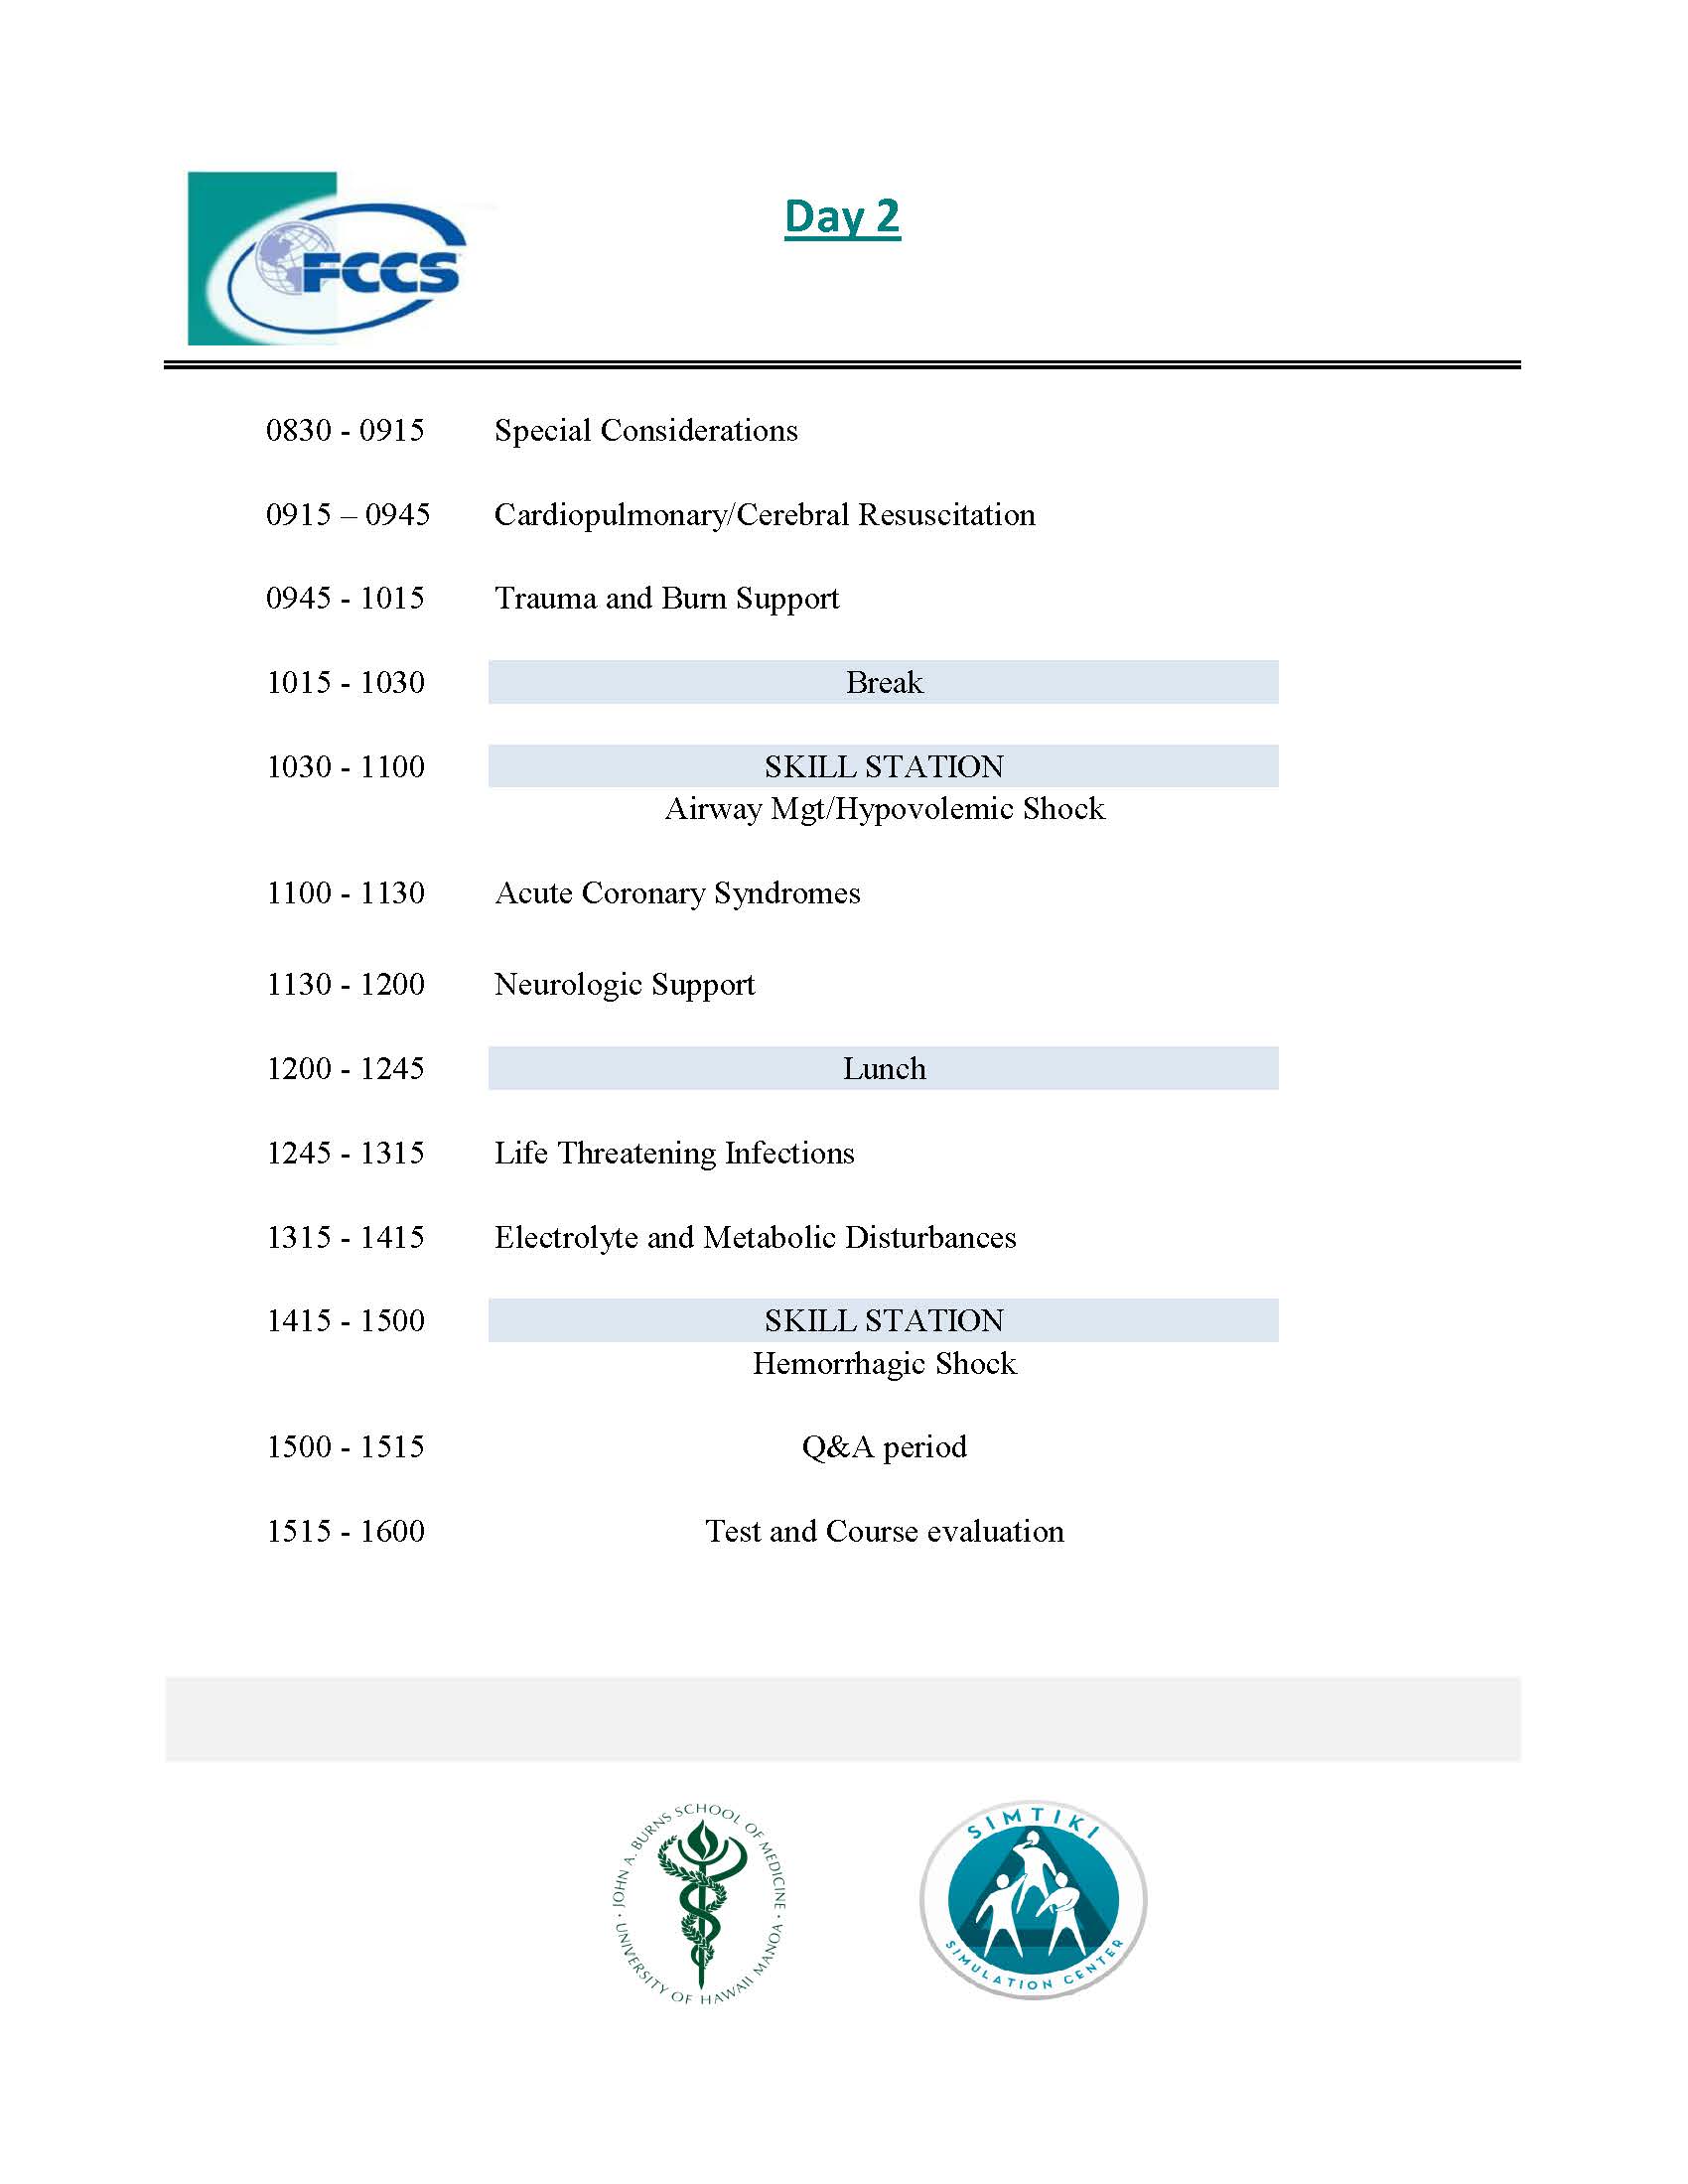 fccs agenda day 2